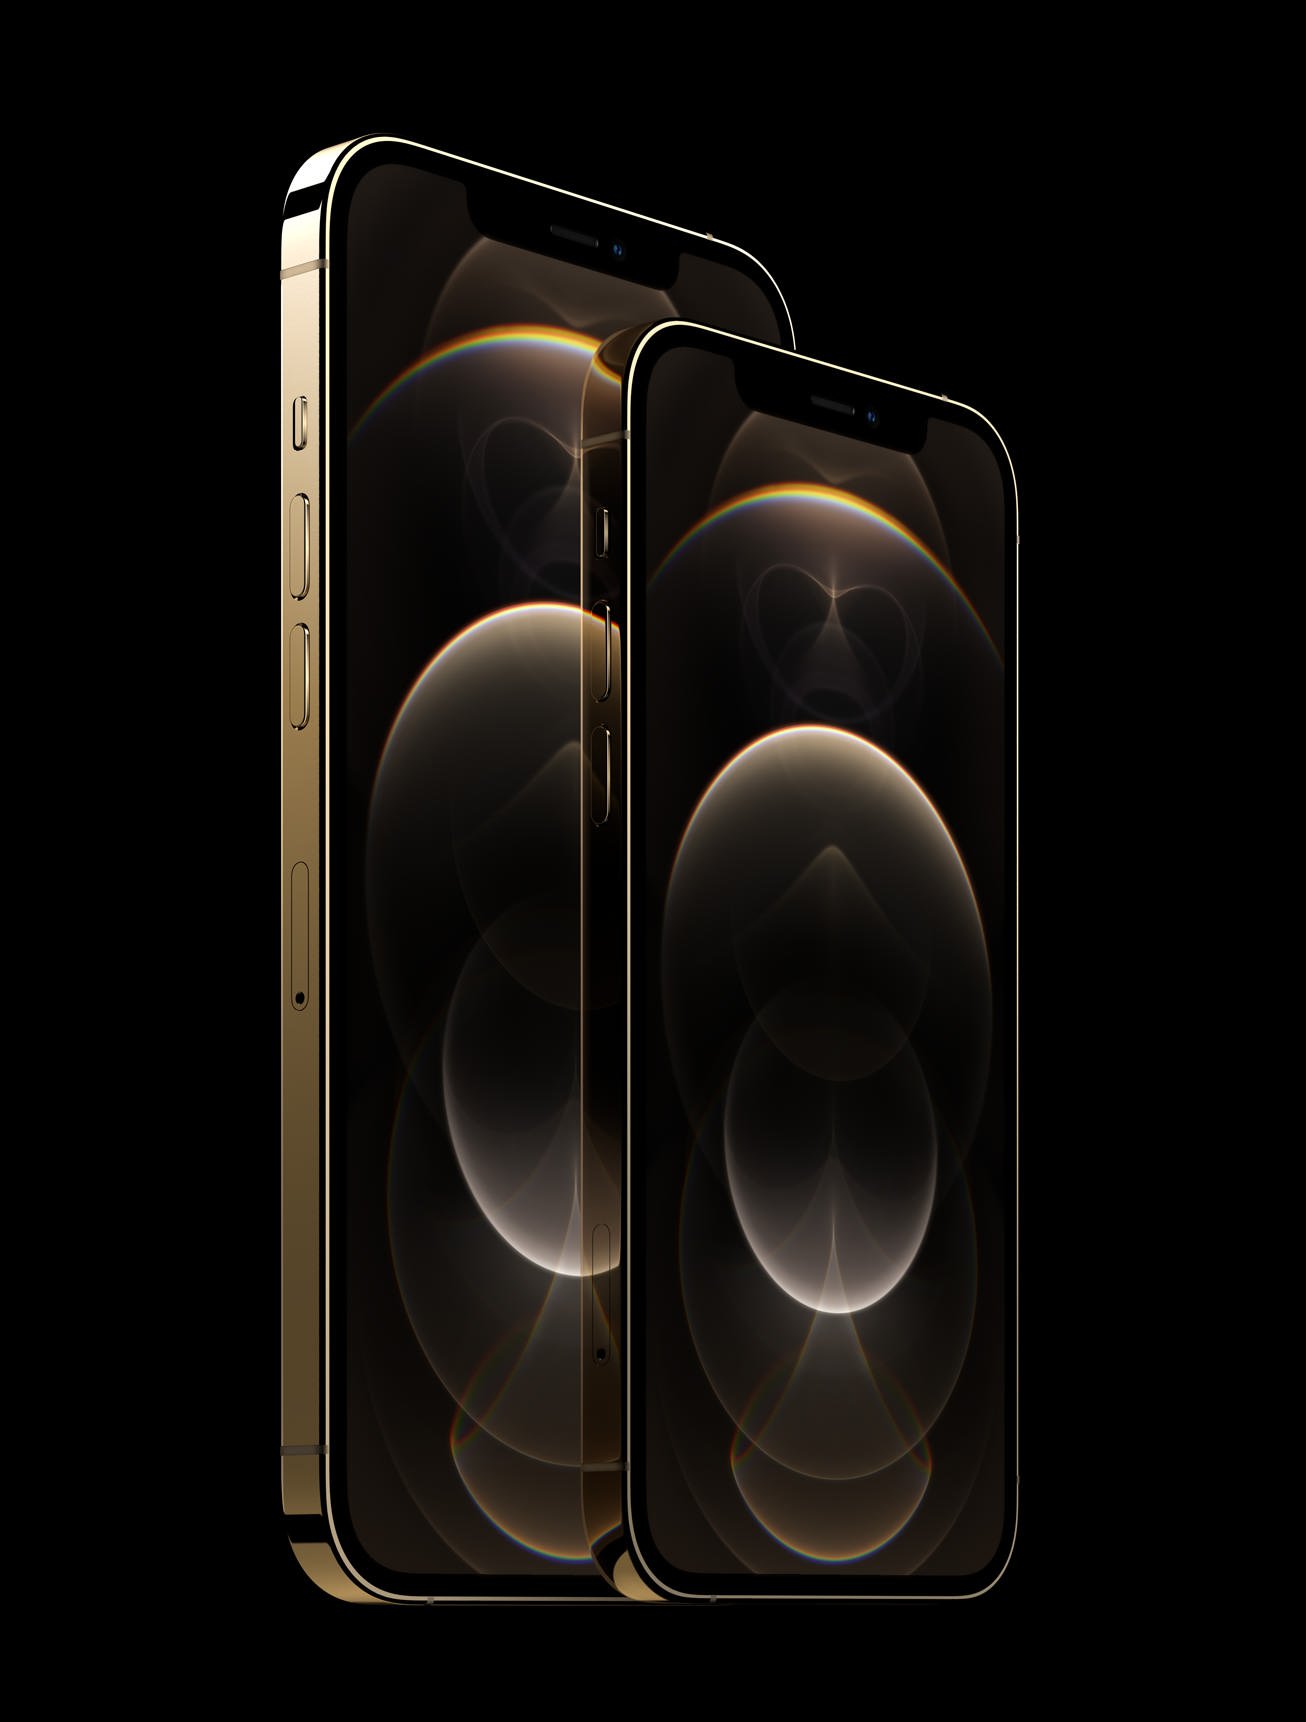 iPhone 12 Pro và iPhone 12 Pro Max ra mắt: Màn hình lớn hơn, camera tốt hơn với nhiều tính năng mới